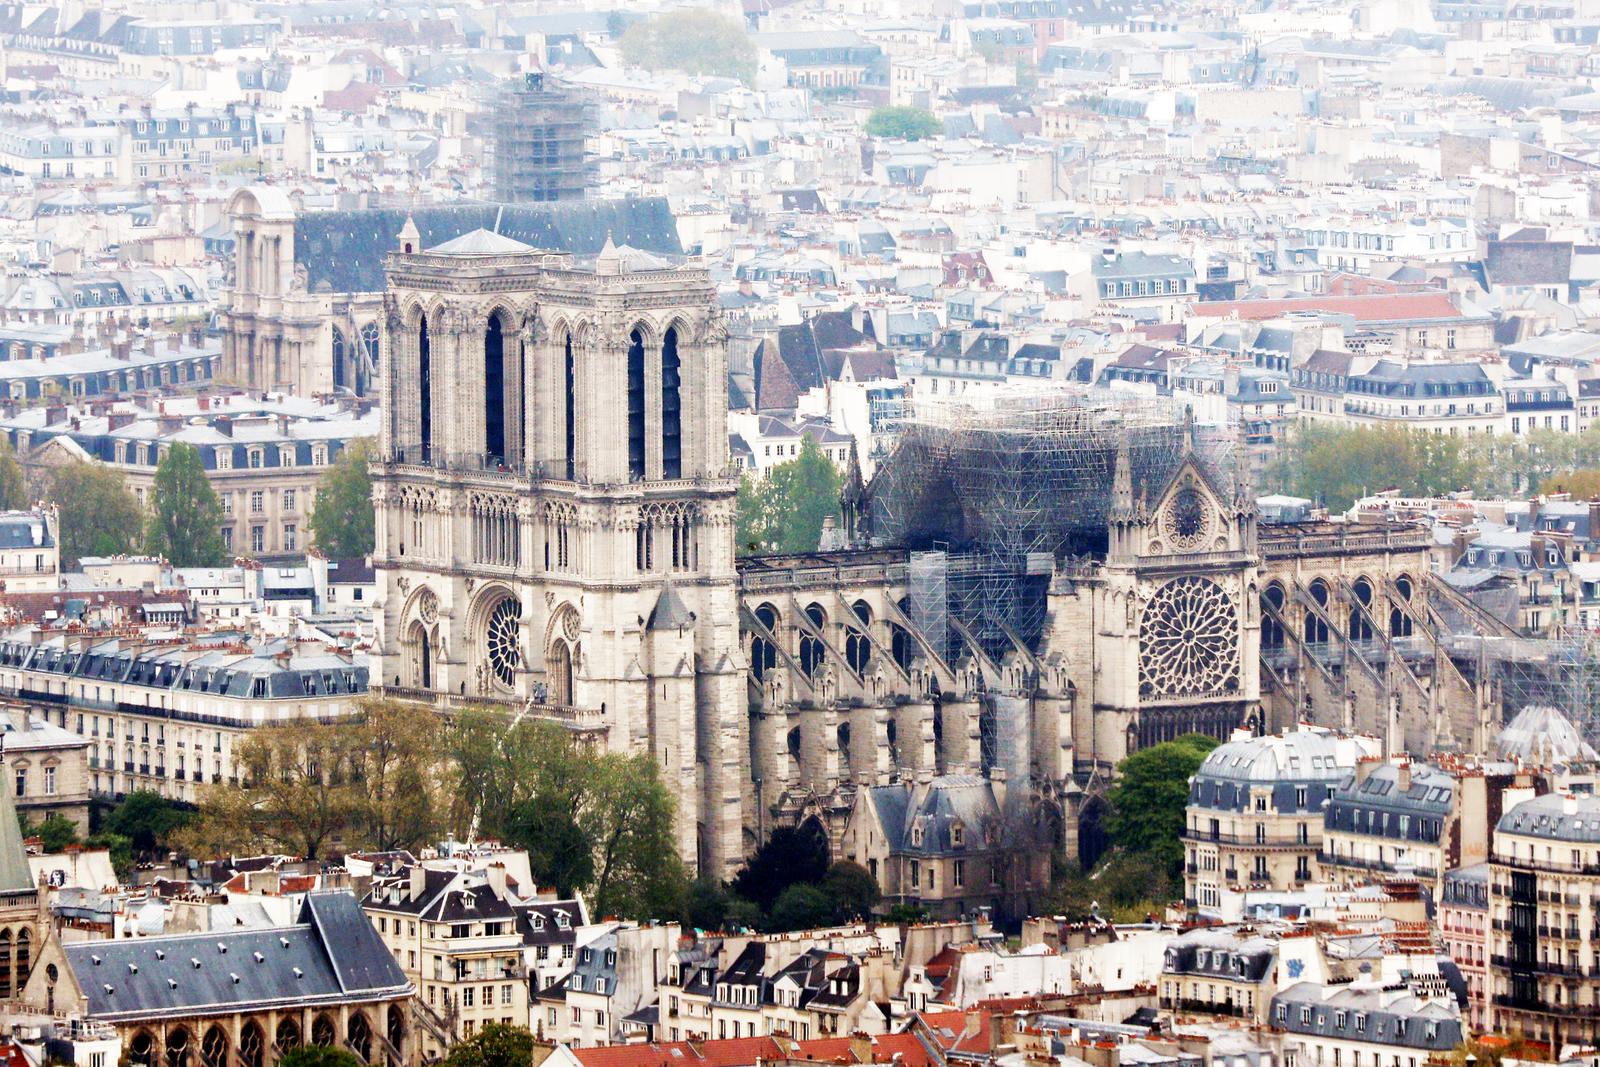 Bomberos apagan totalmente el fuego en Notre Dame